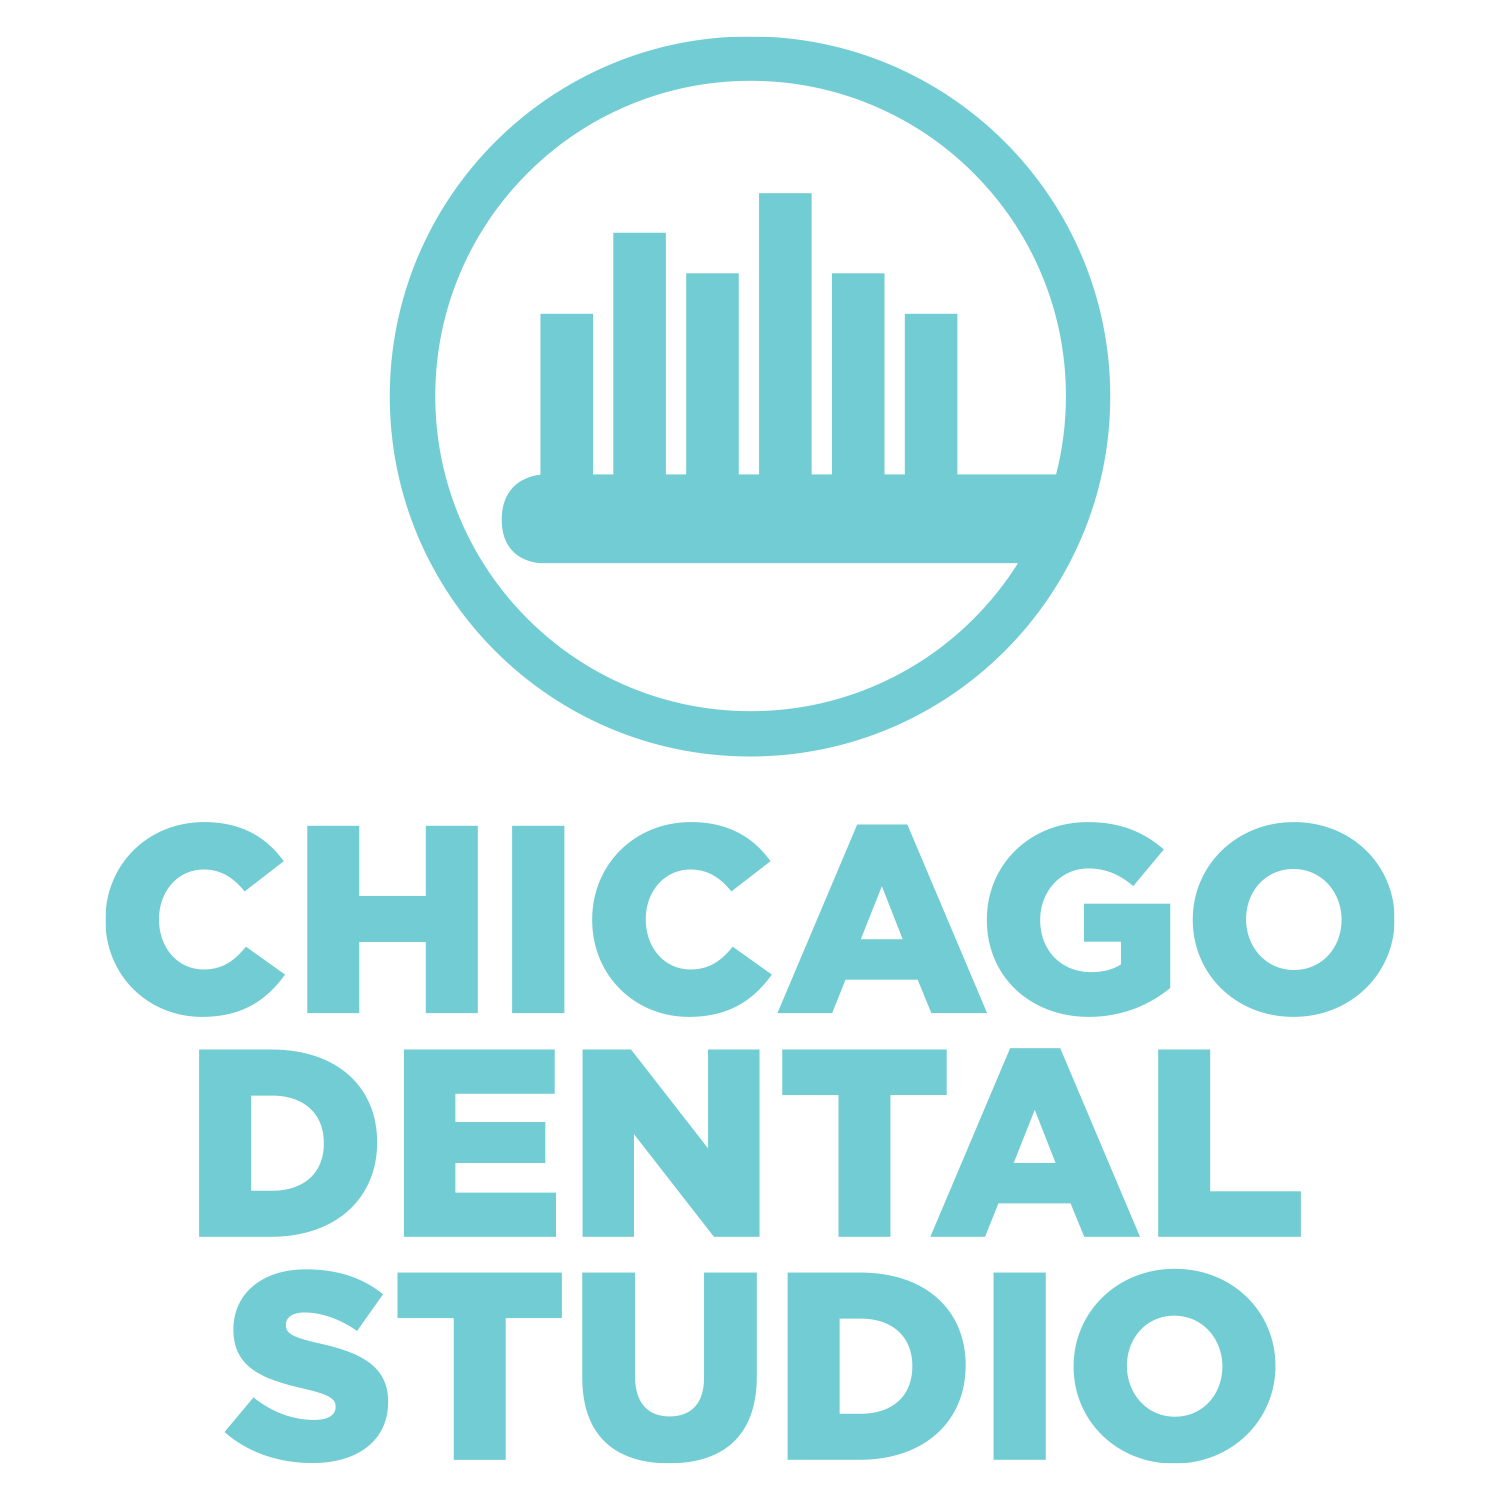 The Chicago Dental Studio, River North - Chicago, IL 60654 - (312)267-1917 | ShowMeLocal.com